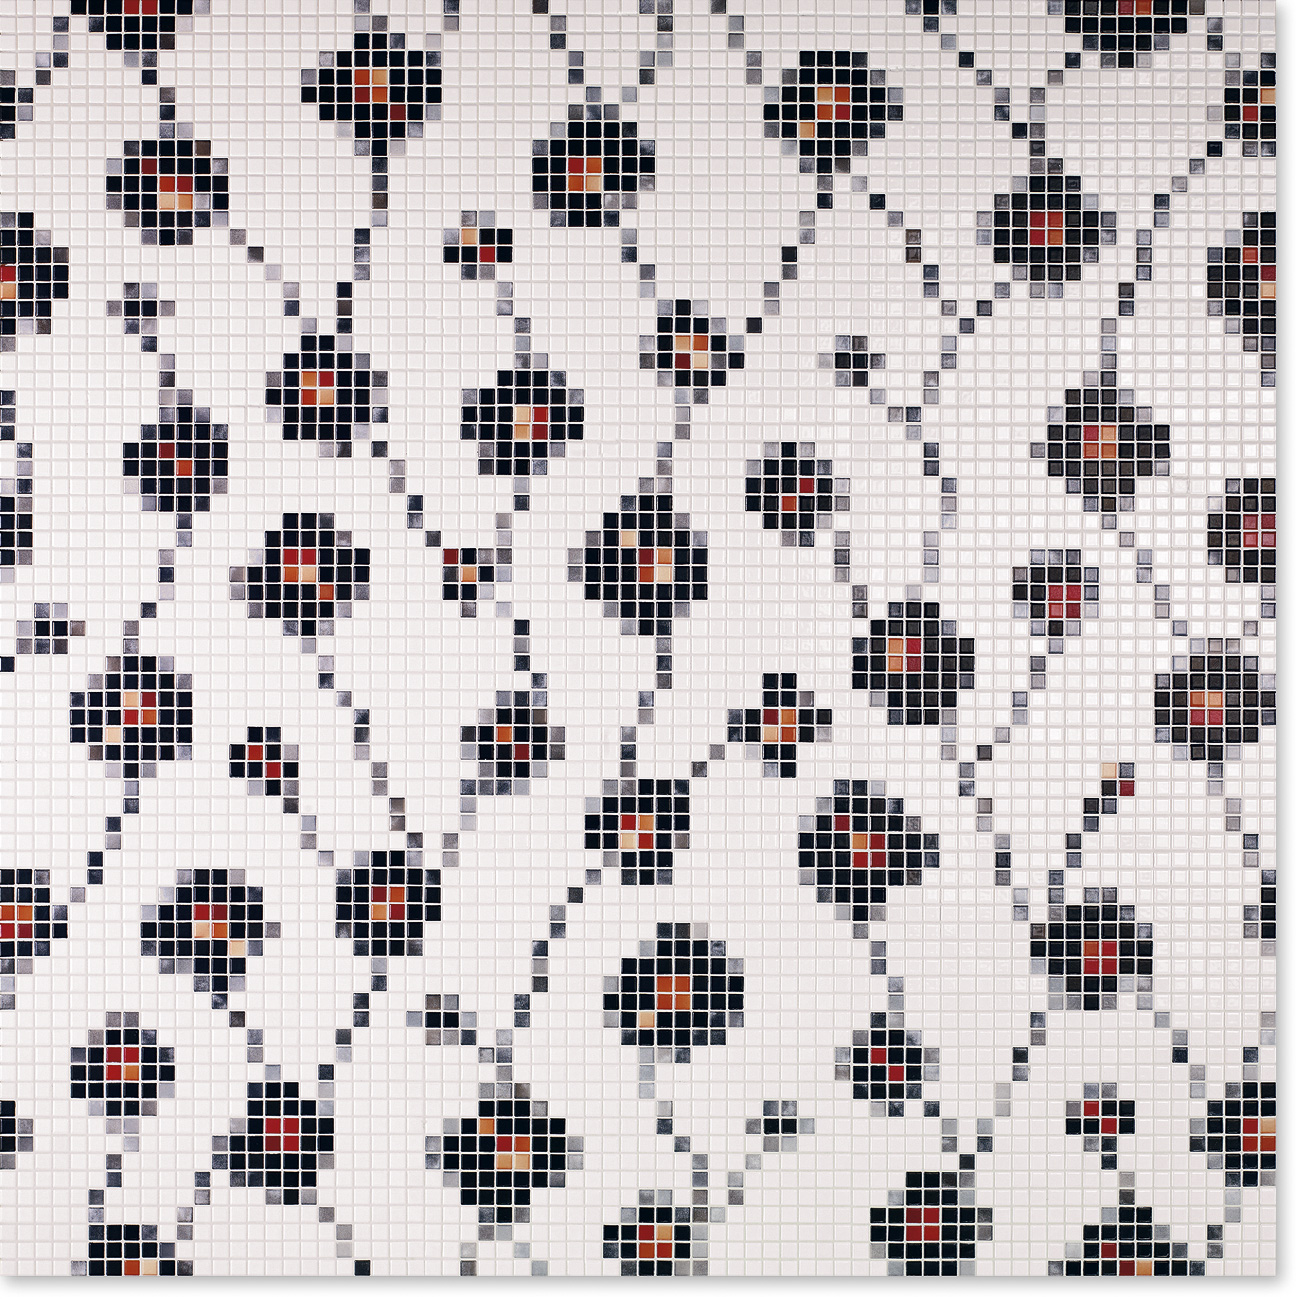 Декор-пано Jasba Lavita 948x948x6,5 из мозаики 12x12x6,5 мм, Wallflowers